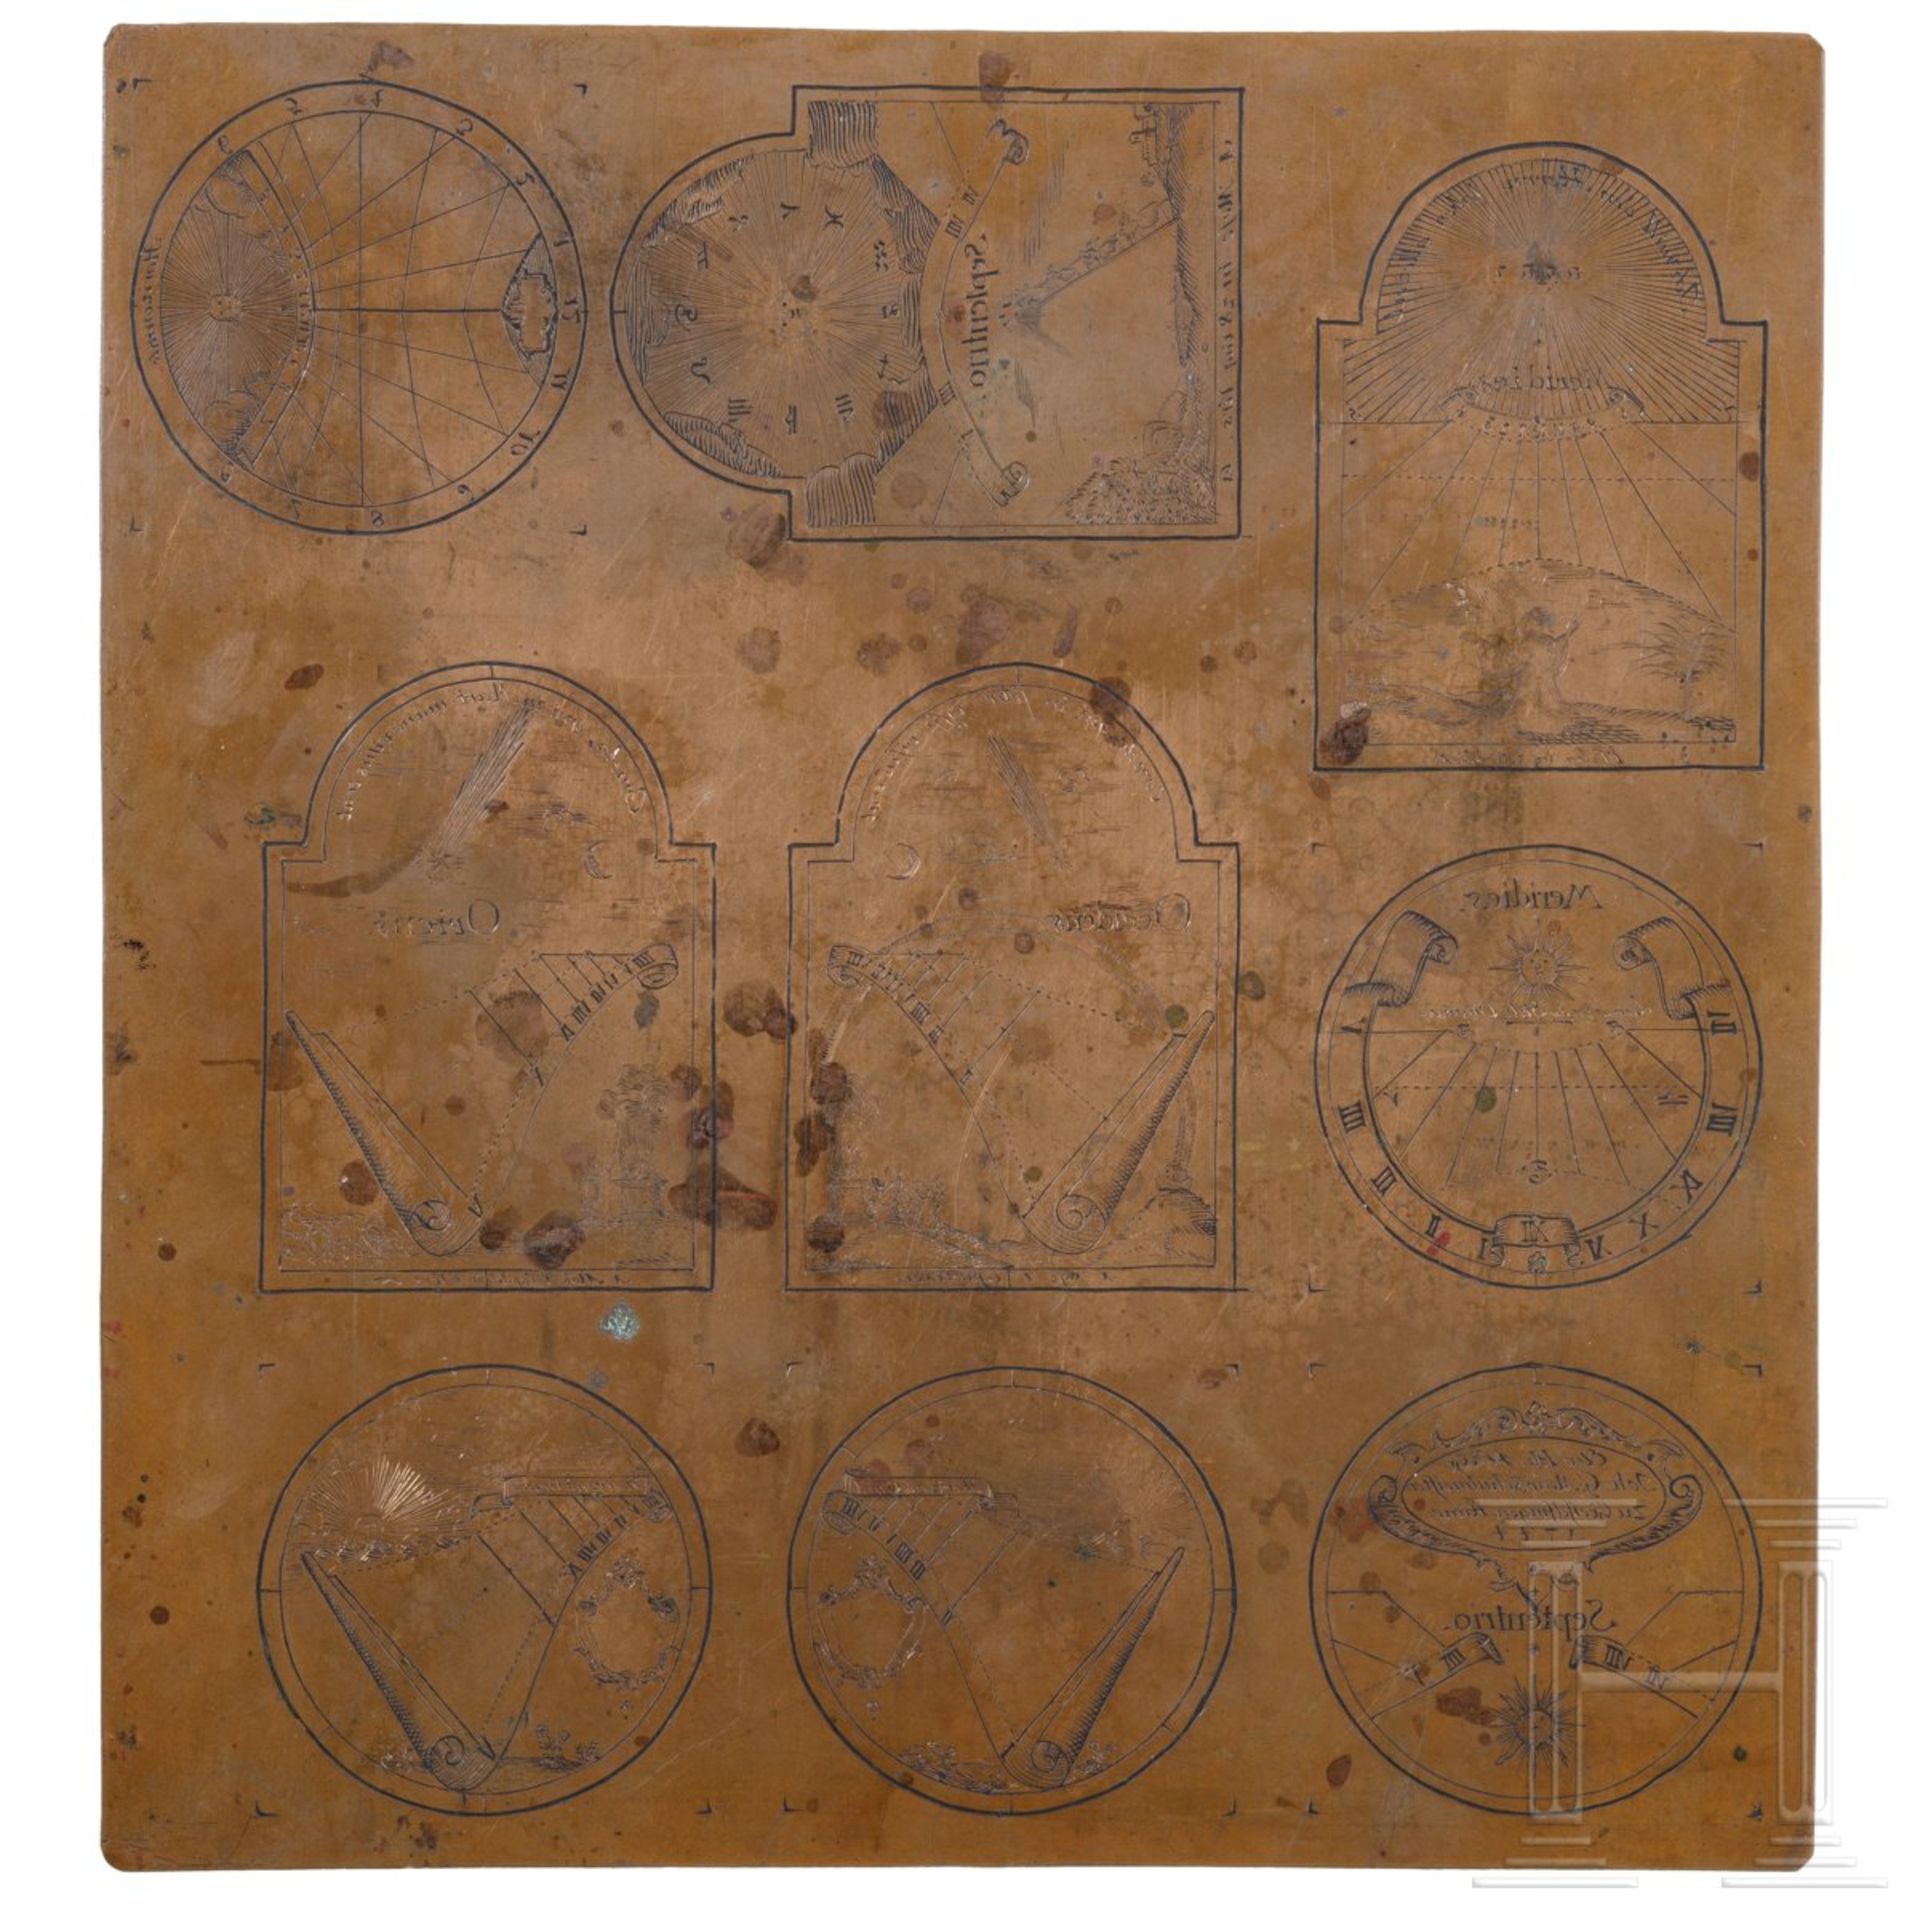 Kupferstichplatte für Sonnenuhrskalen, Schwaben, datiert 1744Rechteckige Kupferplatte mit neun